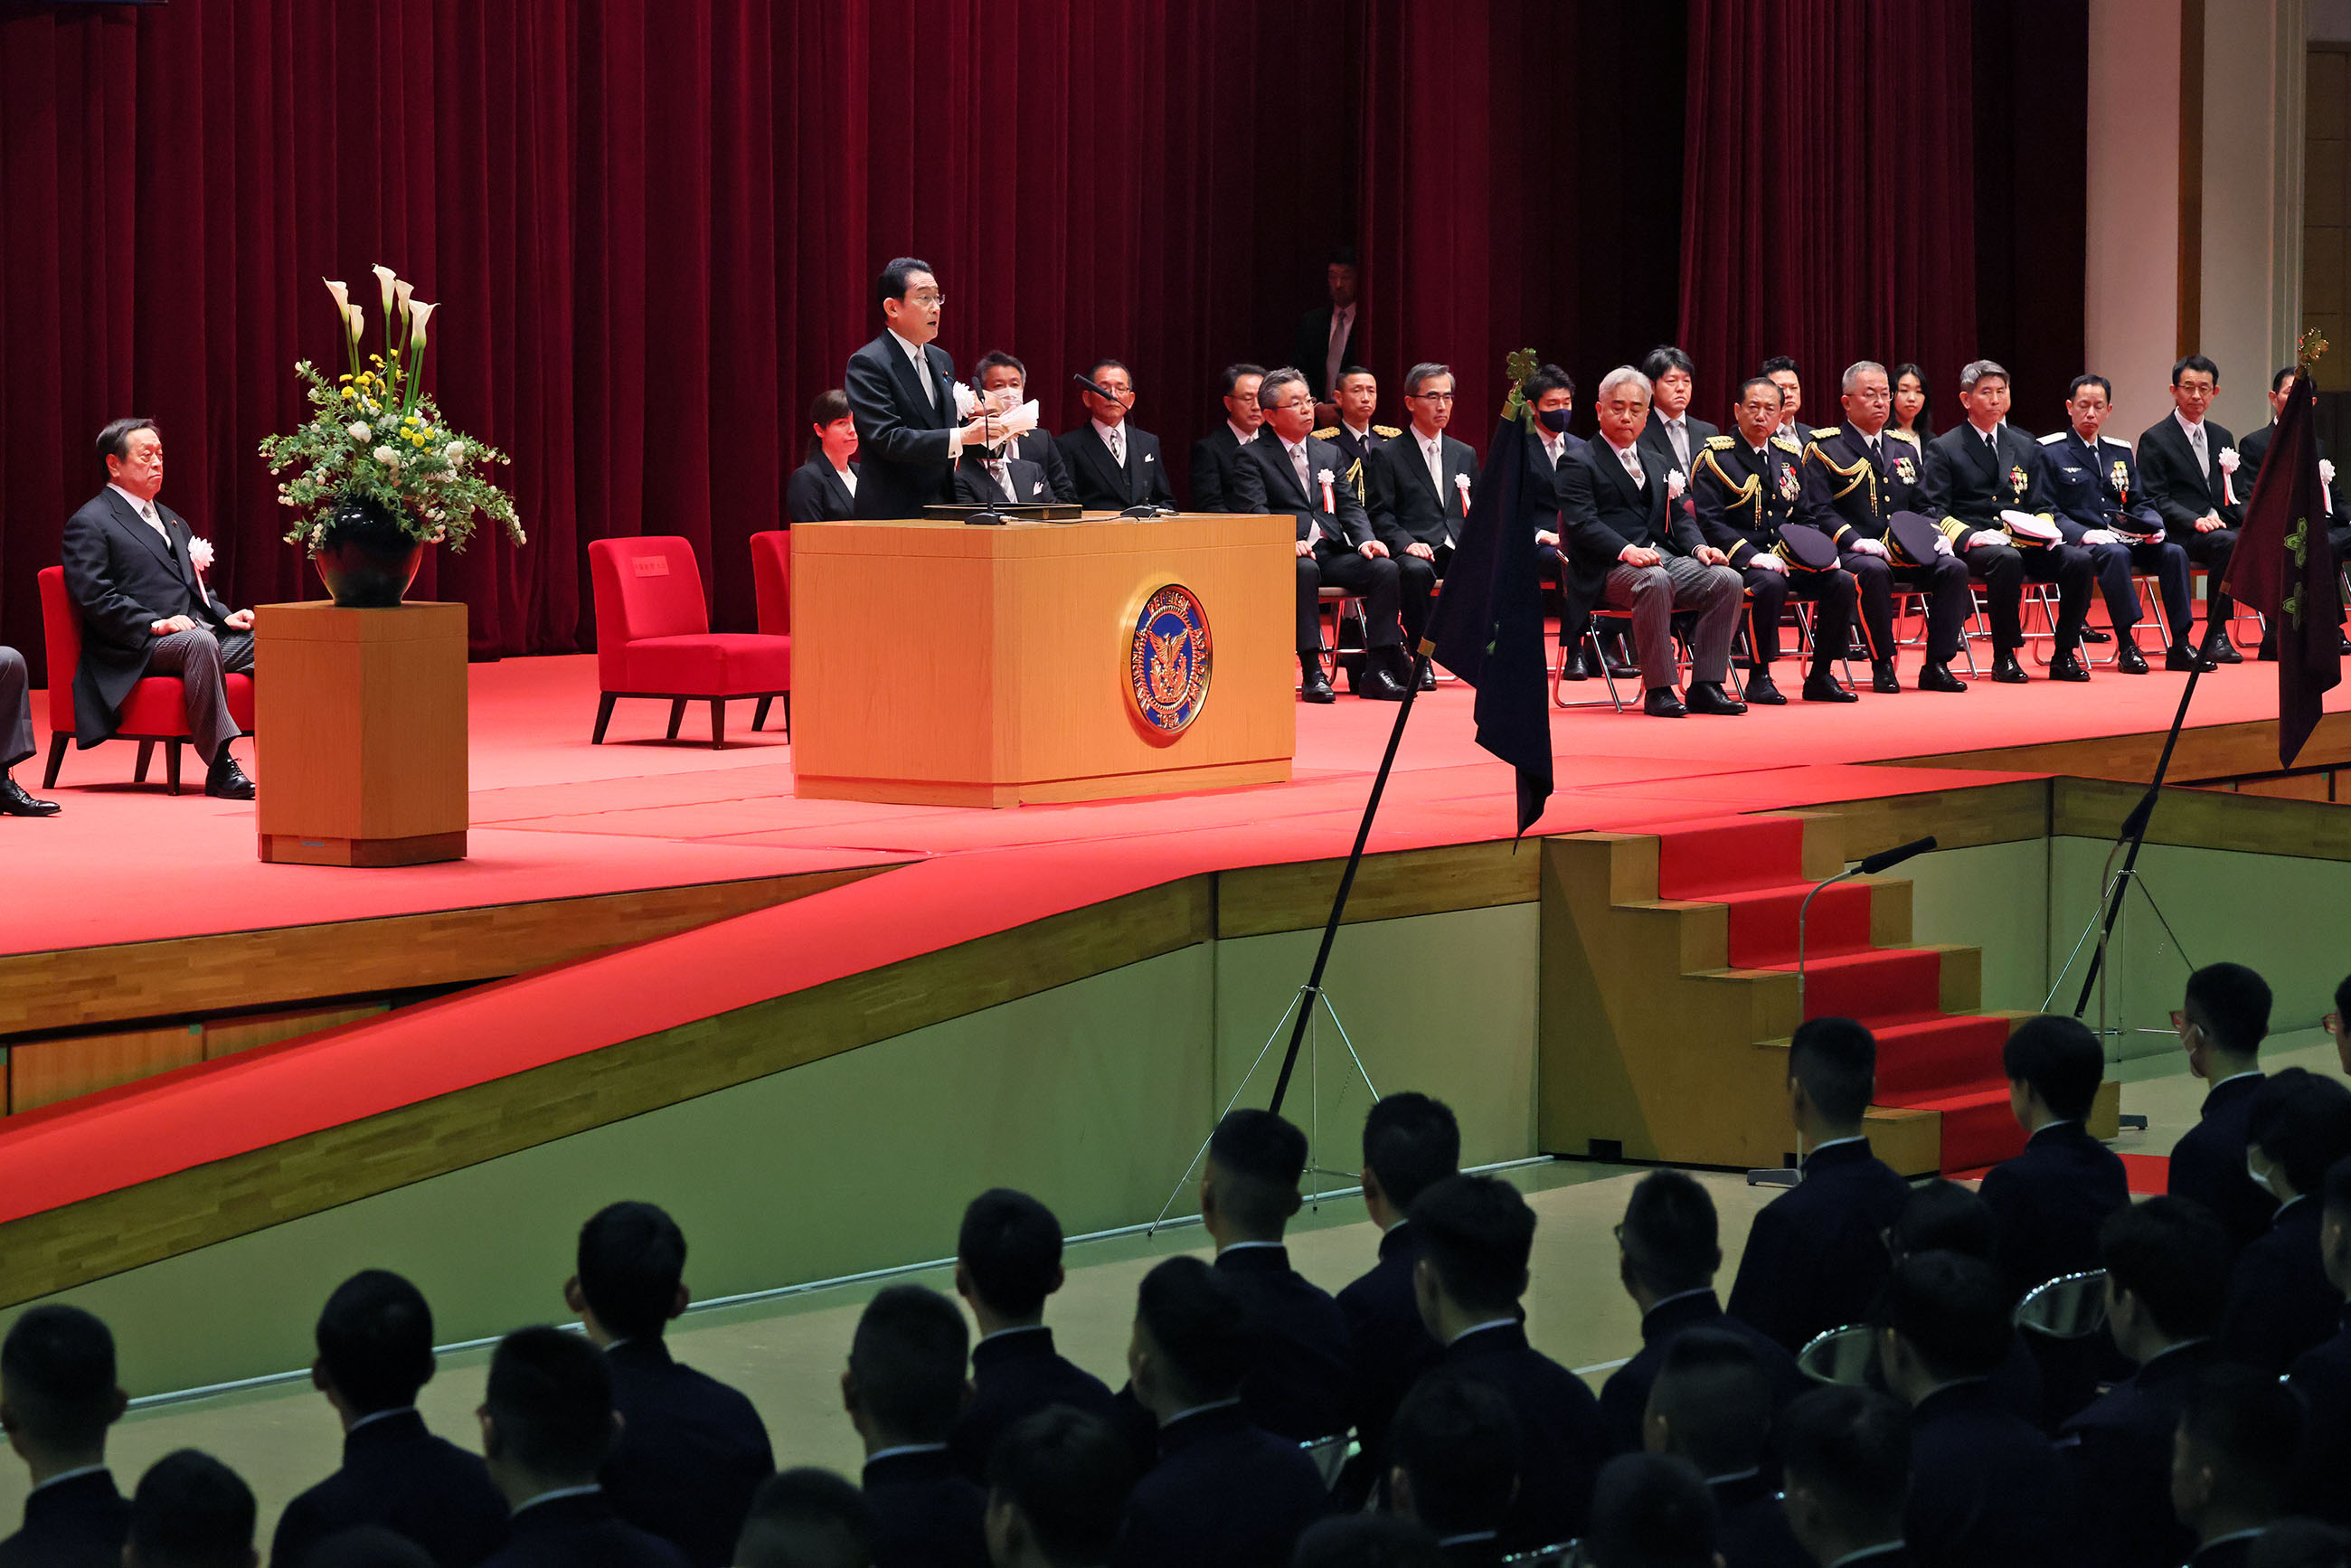 Prime Minister Kishida delivering a commencement address (2)